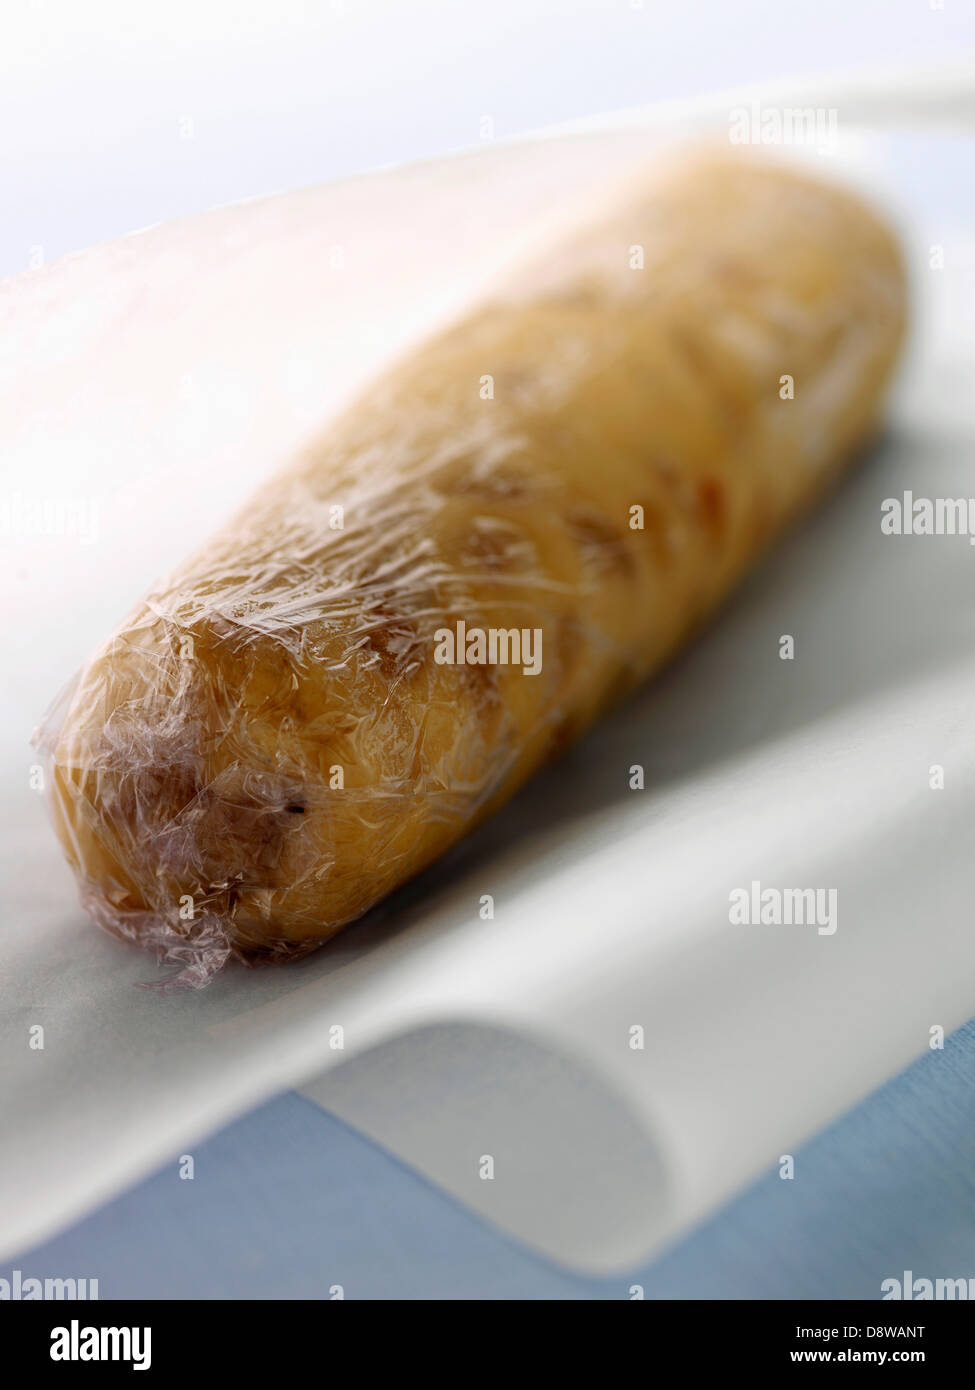 Envelopper le rouleau de pâte à biscuits dans Ziploc® Banque D'Images